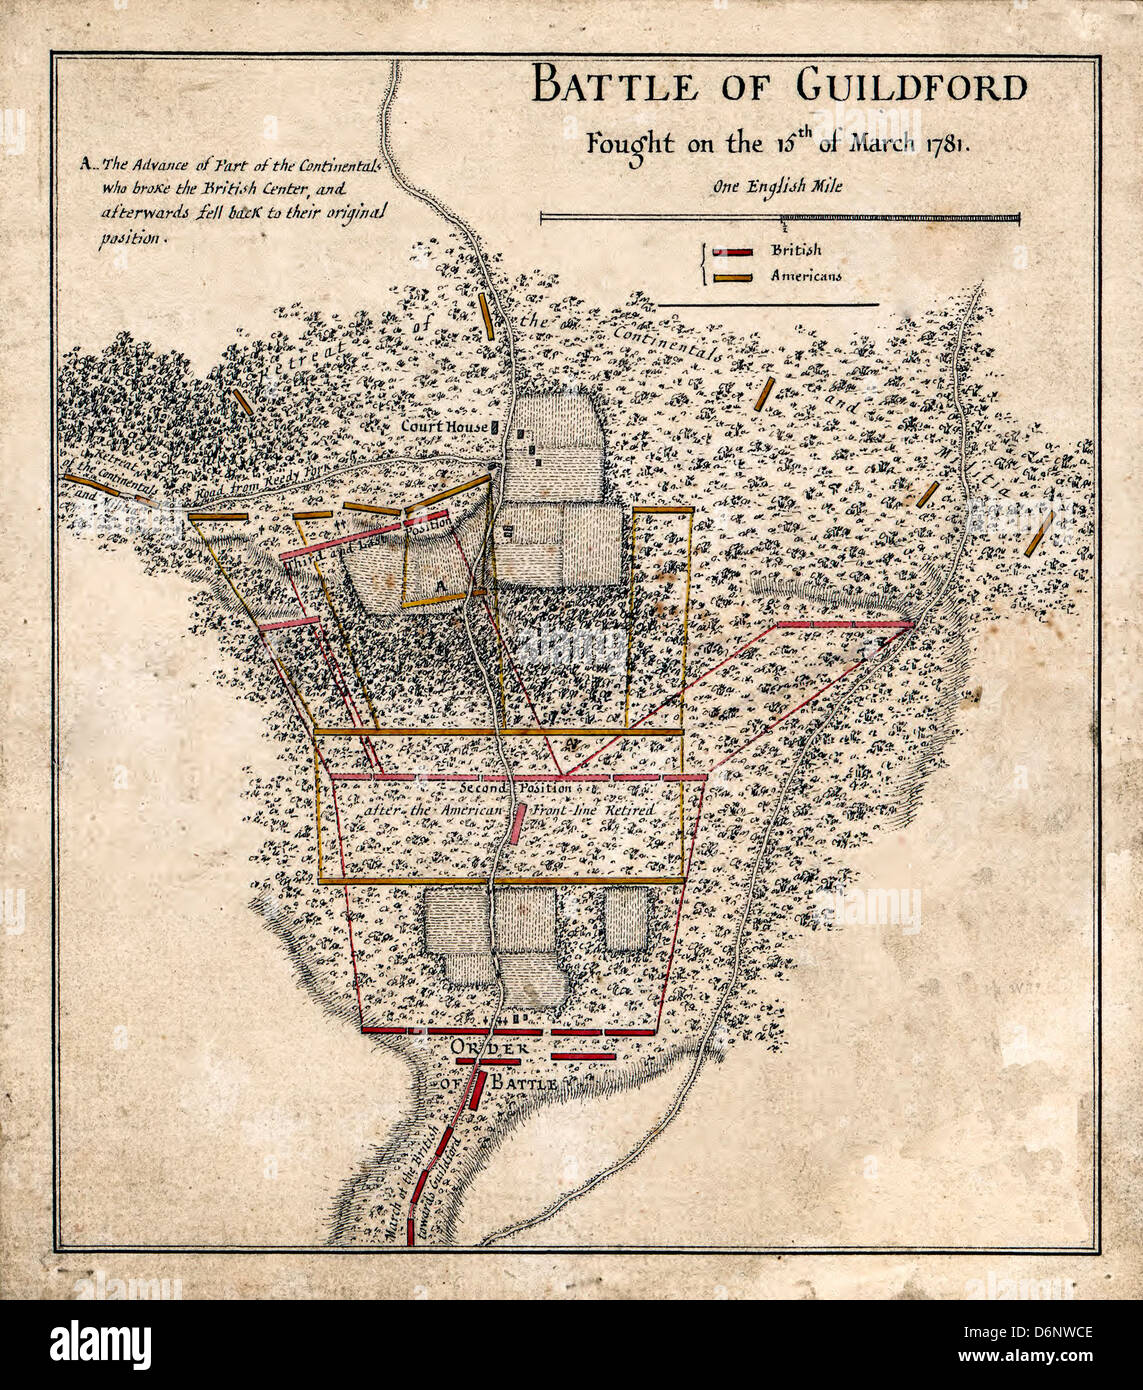 Batalla de Guildford lucharon en el 15 de marzo de 1781. La batalla de Guilford Courthouse, Carolina del Norte, EE.UU. durante la Guerra Revolucionaria Foto de stock